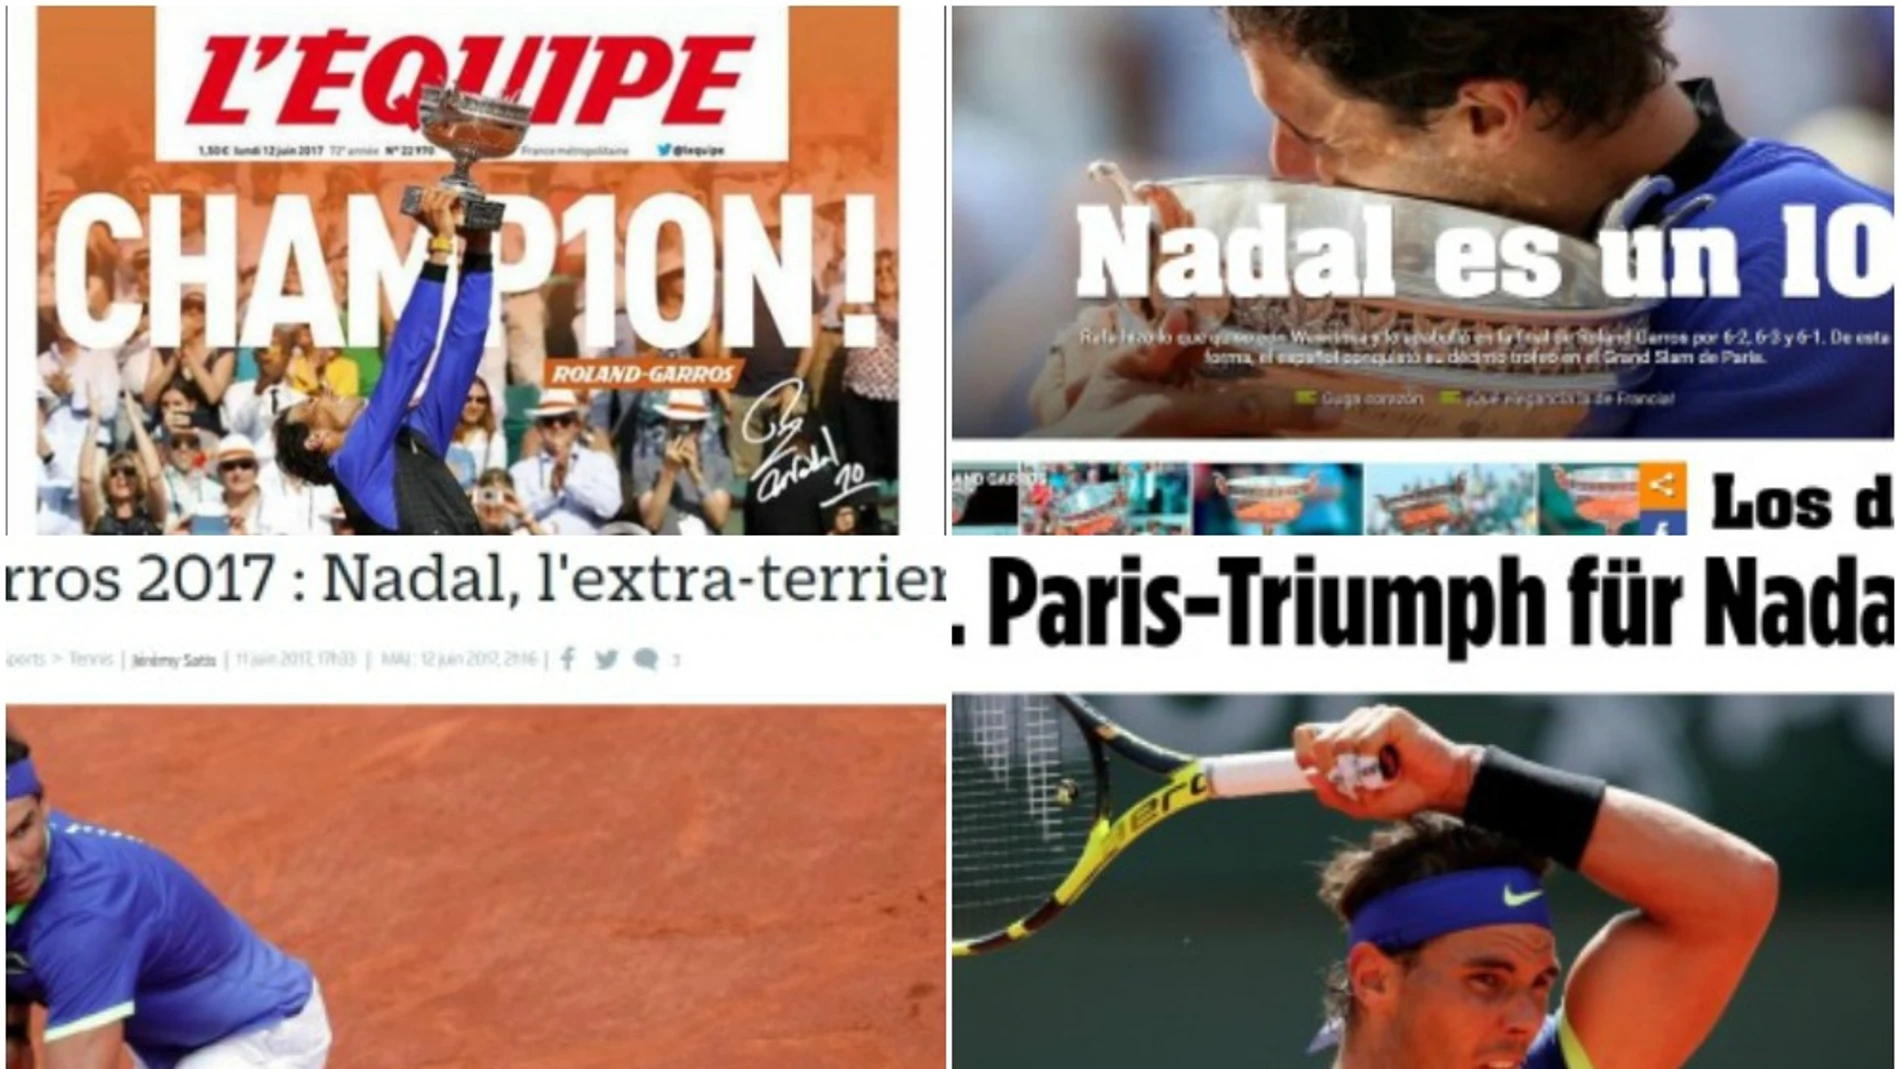 Las portadas de los medios tras el Roland Garros de Nadal